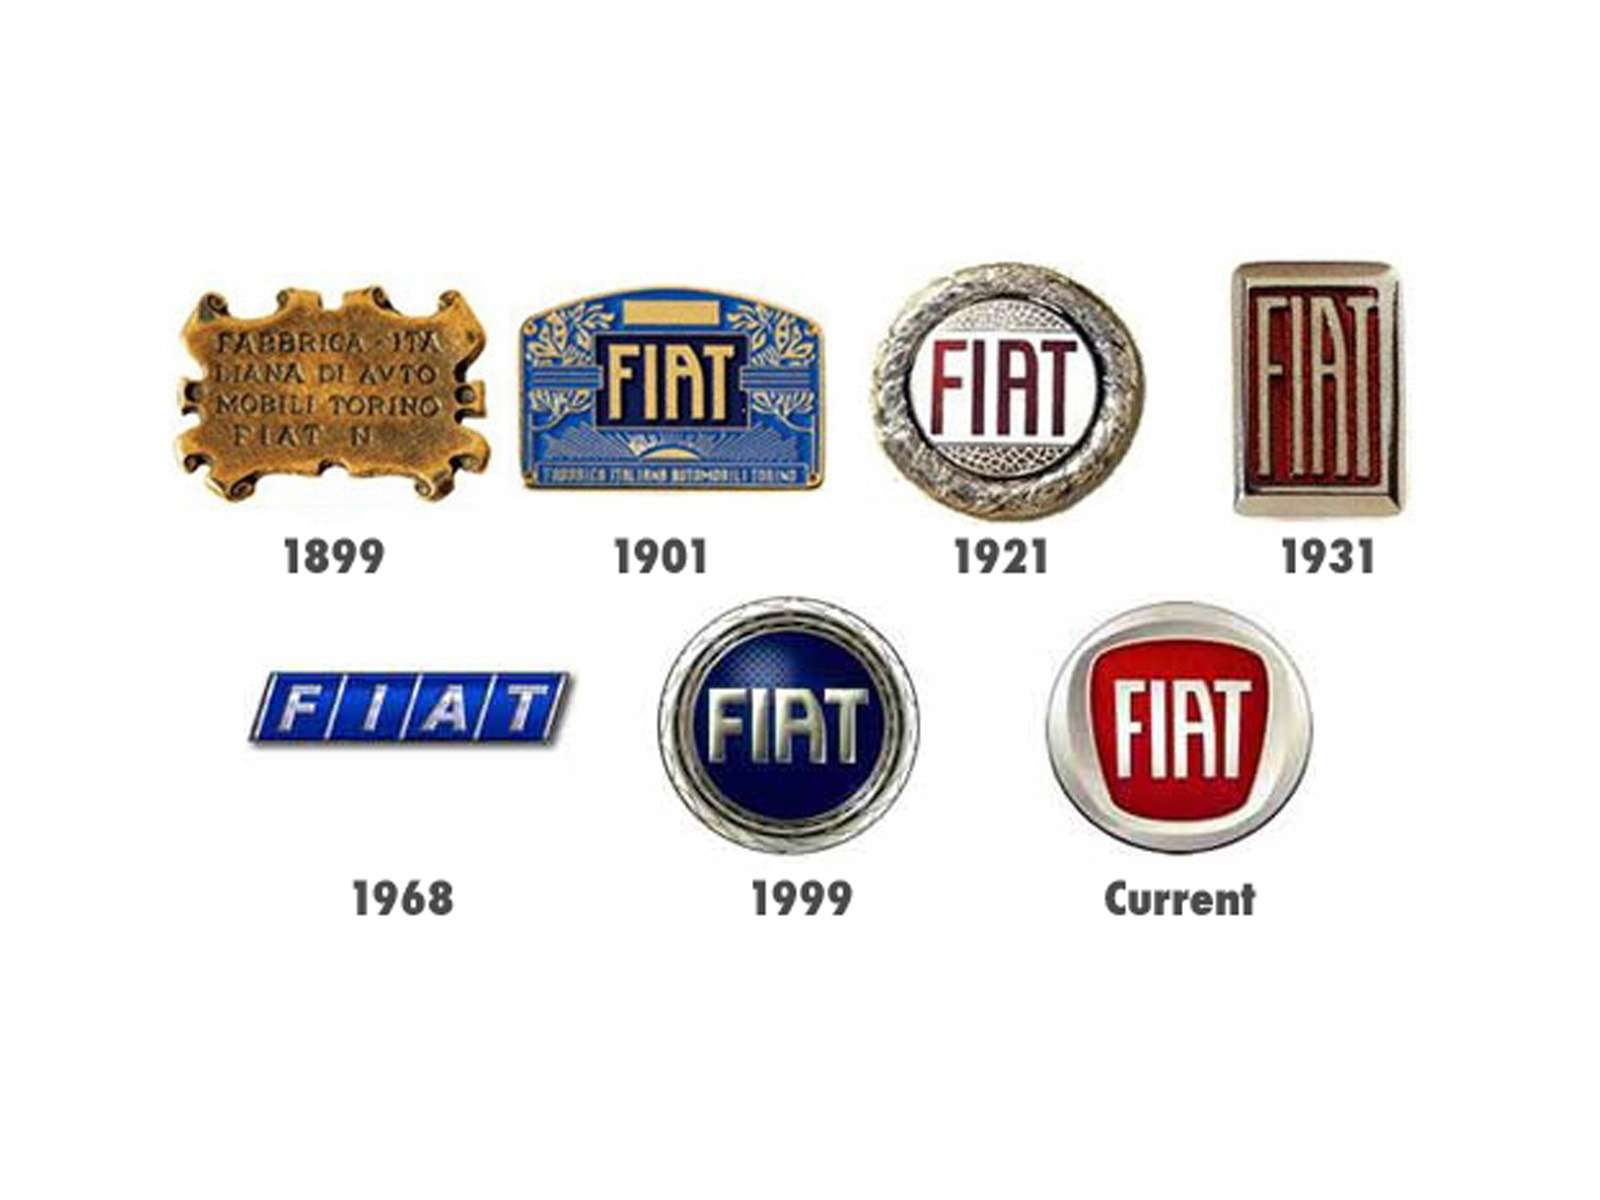 FIAT. Аббревиатура FIAT означает Fabbrica Italiana Automobili Torino. С первых дней существования компании ее логотип представляет собой табличку с надписью FIAT. За сто с лишним лет она много раз меняла форму: становилась круглой, прямоугольной, щитовидной и снова круглой. В 1968 году фирменный шрифт сменили на современный, вписав название компании в косой треугольник. А впоследствии вновь вернулись к стилизованной на манер 1901 года надписи FIAT с характерной скошенной «А».